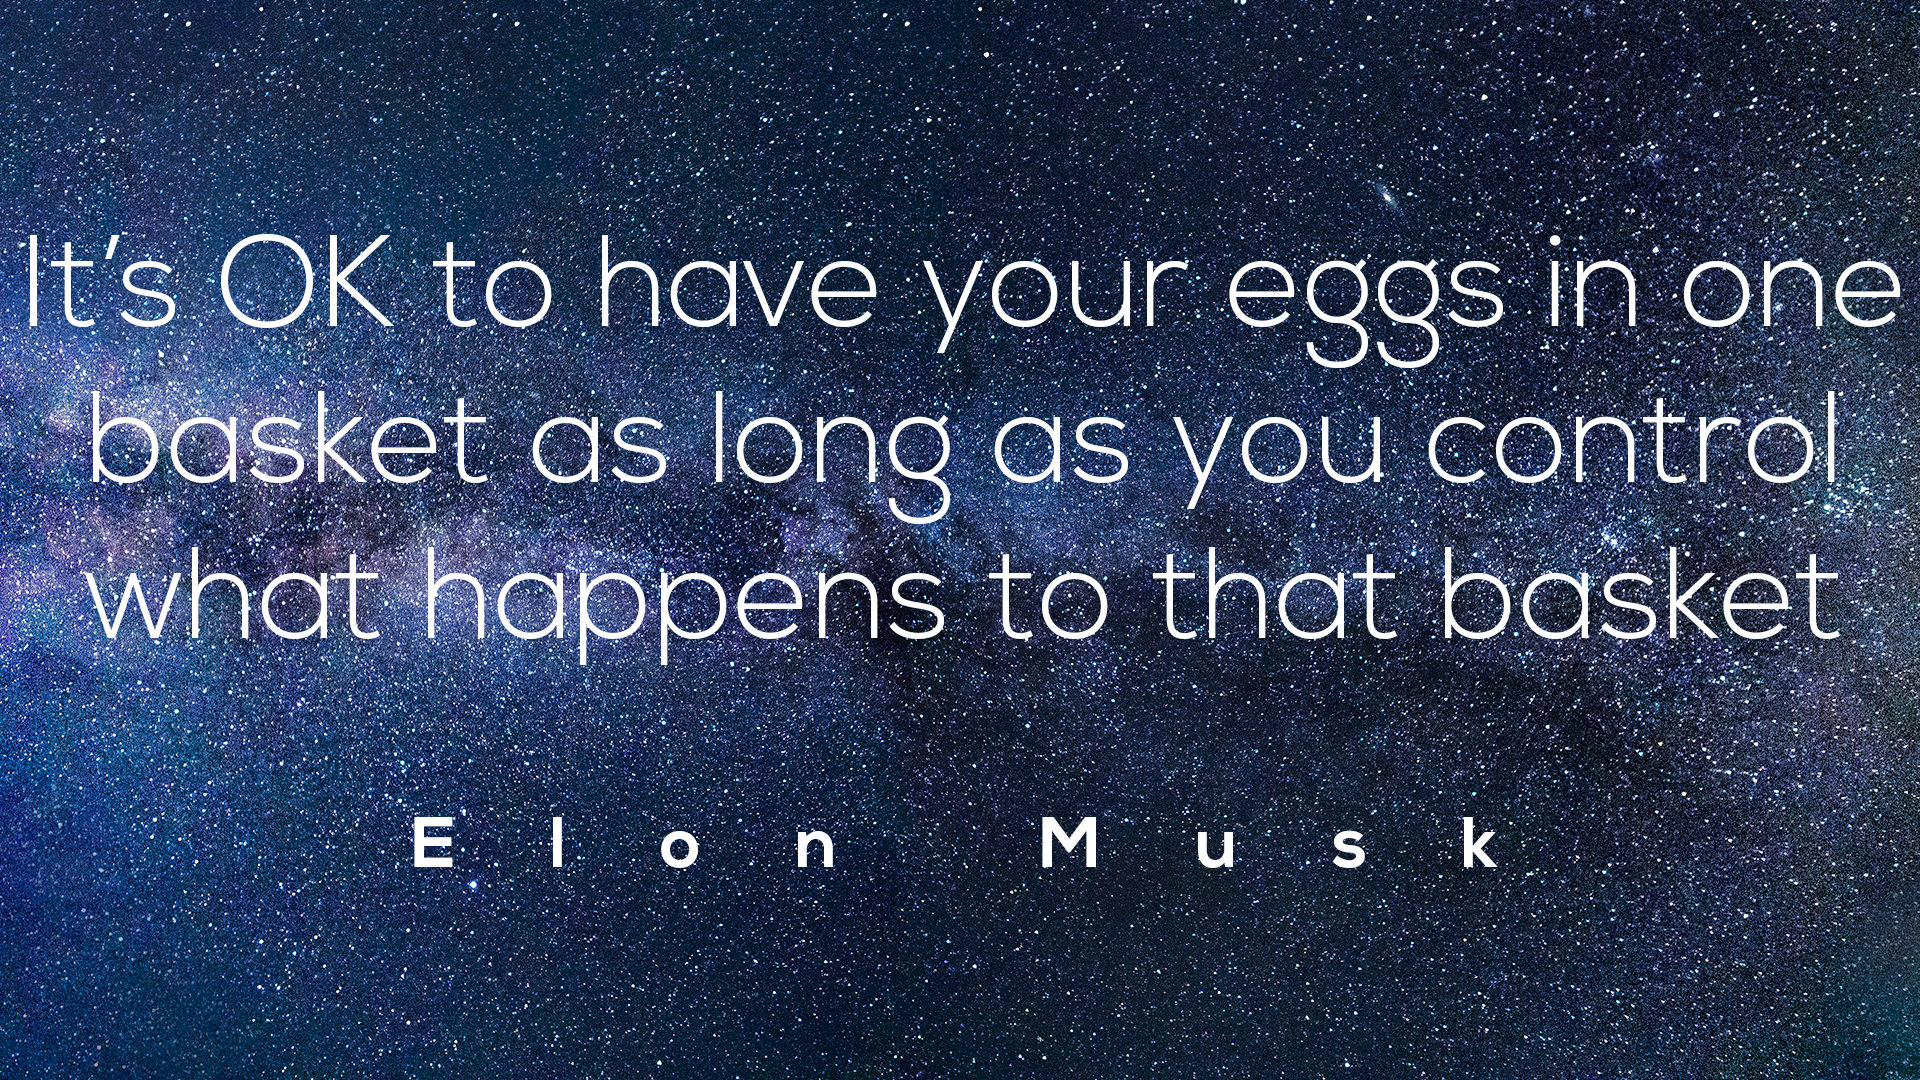 Elon Musk Quotes as Desktop Wallpaper [1920x1080]